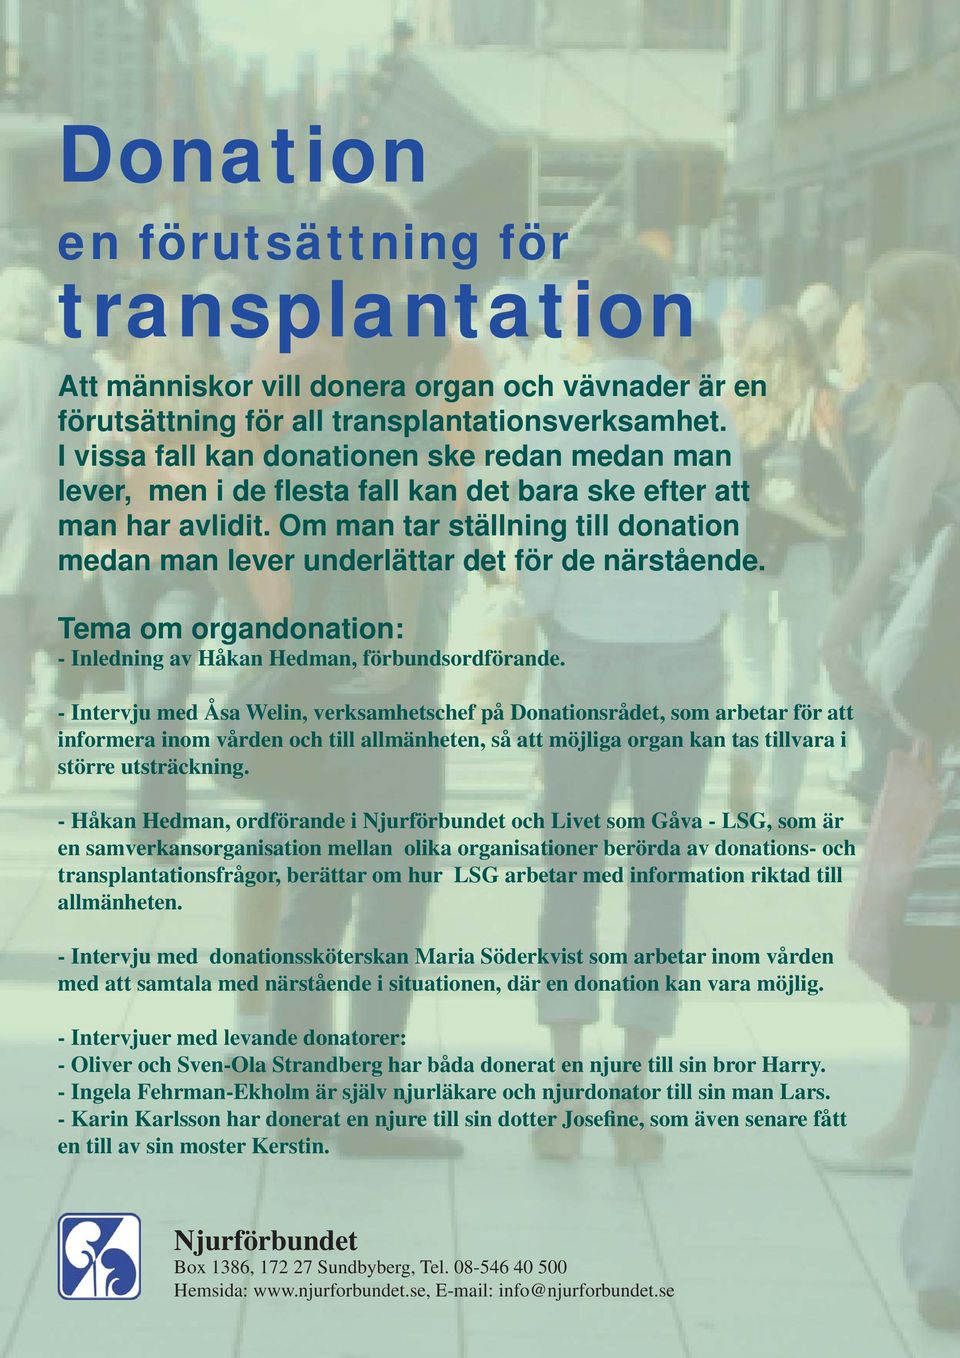 Om man tar ställning till donation medan man lever underlättar det för de närstående. Tema om organdonation: - Inledning av Håkan Hedman, förbundsordförande.